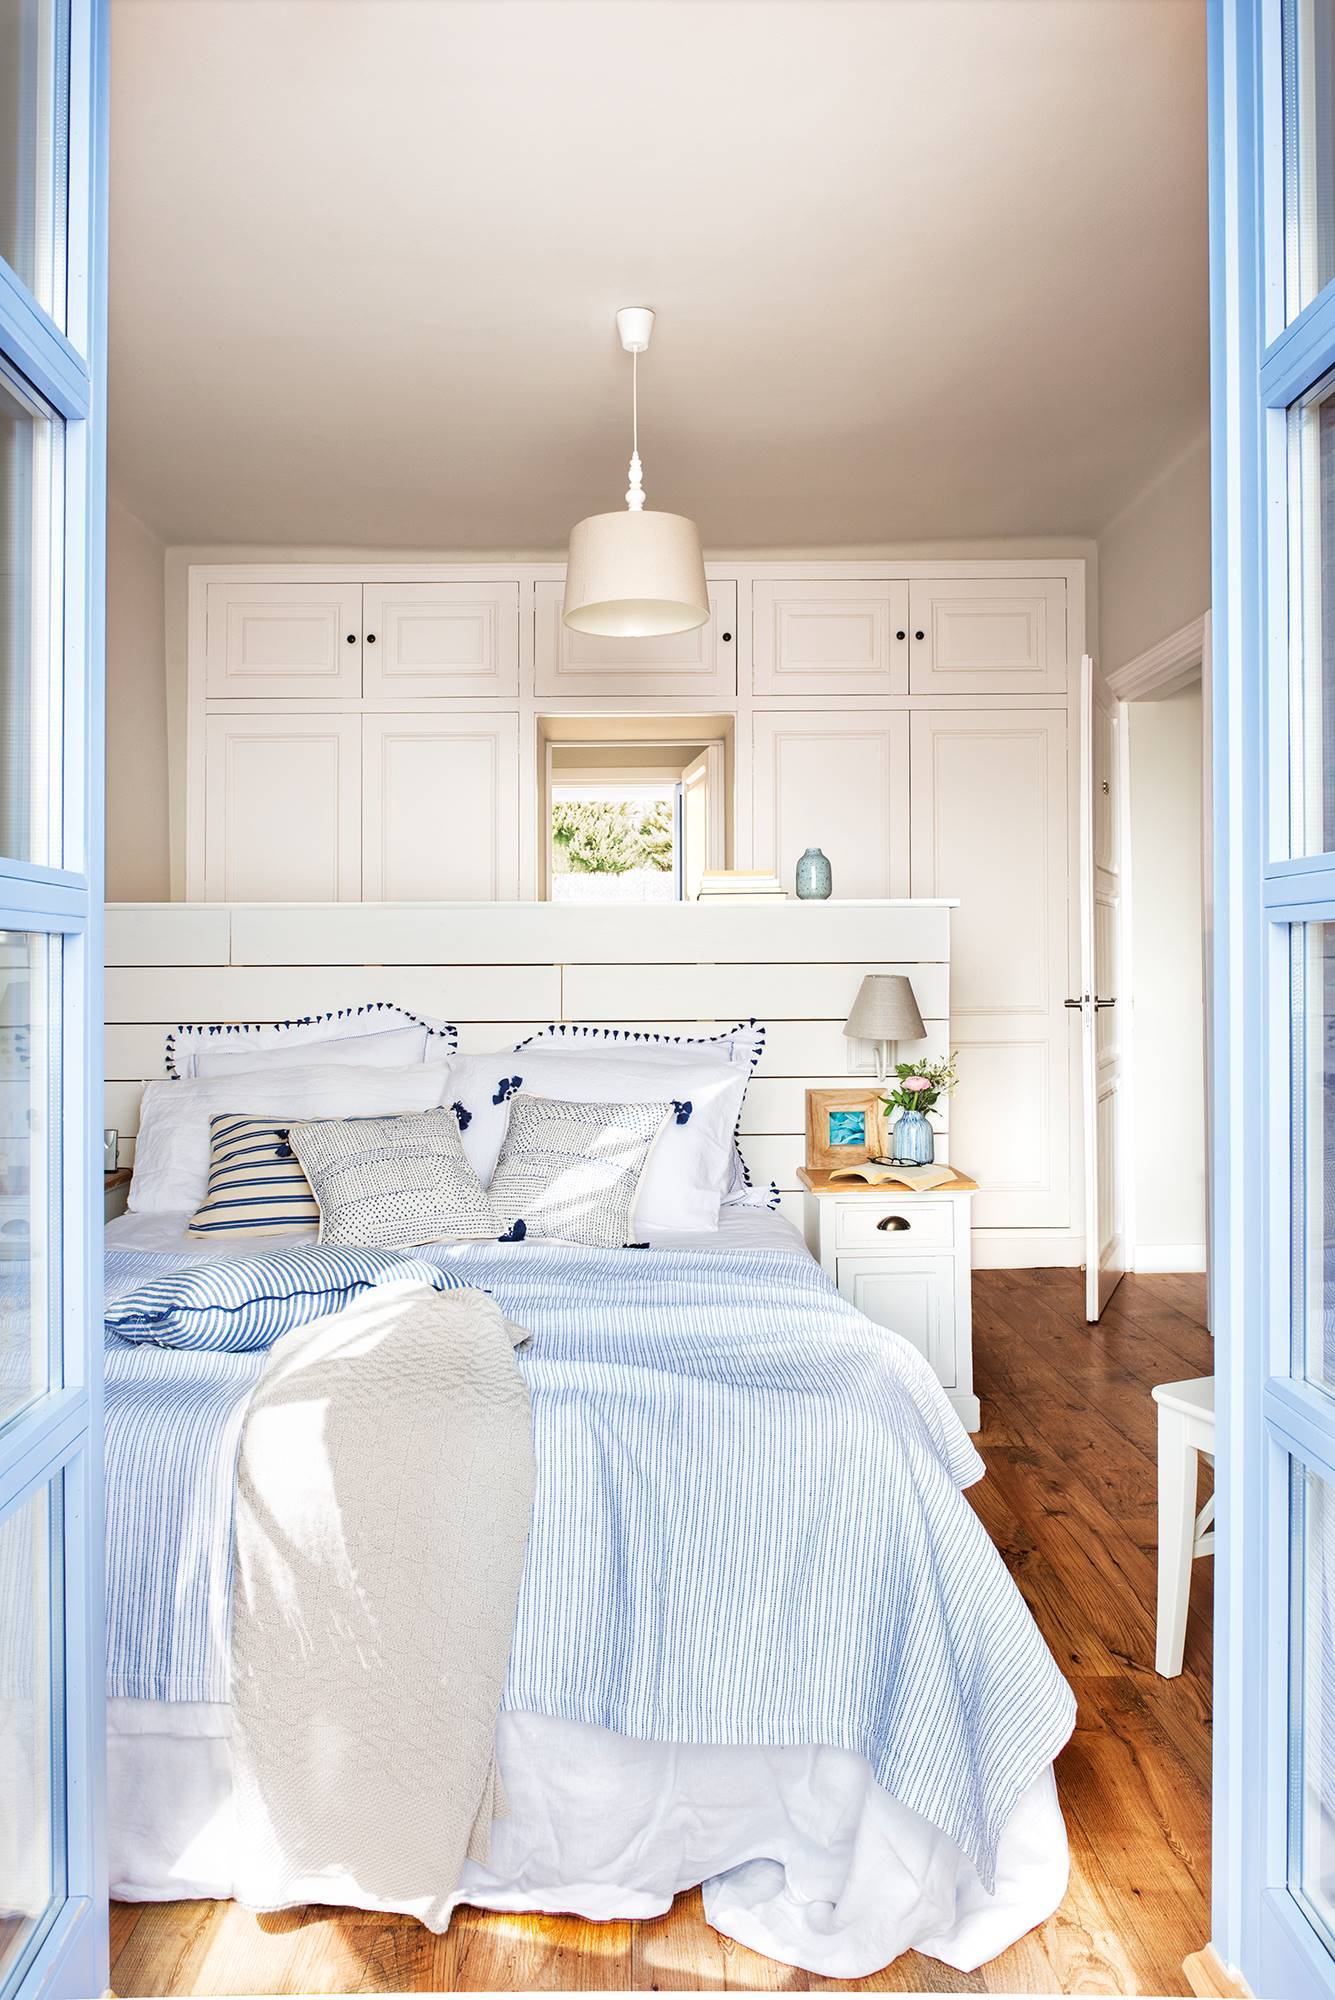 Dormitorio de estilo mediterráneo en blanco y azul.